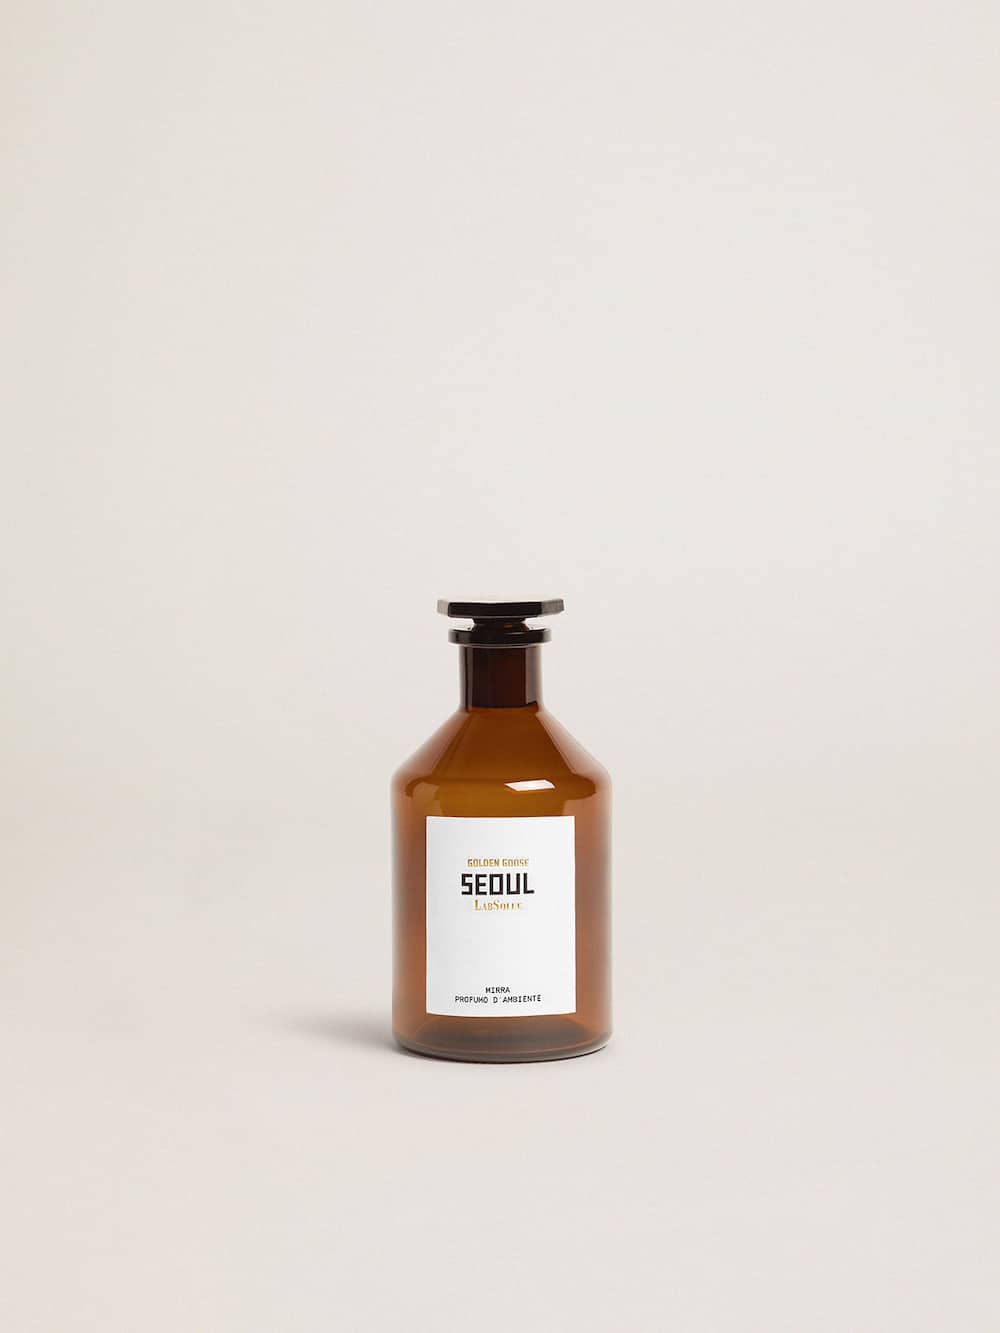 Golden Goose - Seoul Essence Myrrhe Raumduft 500 ml in 